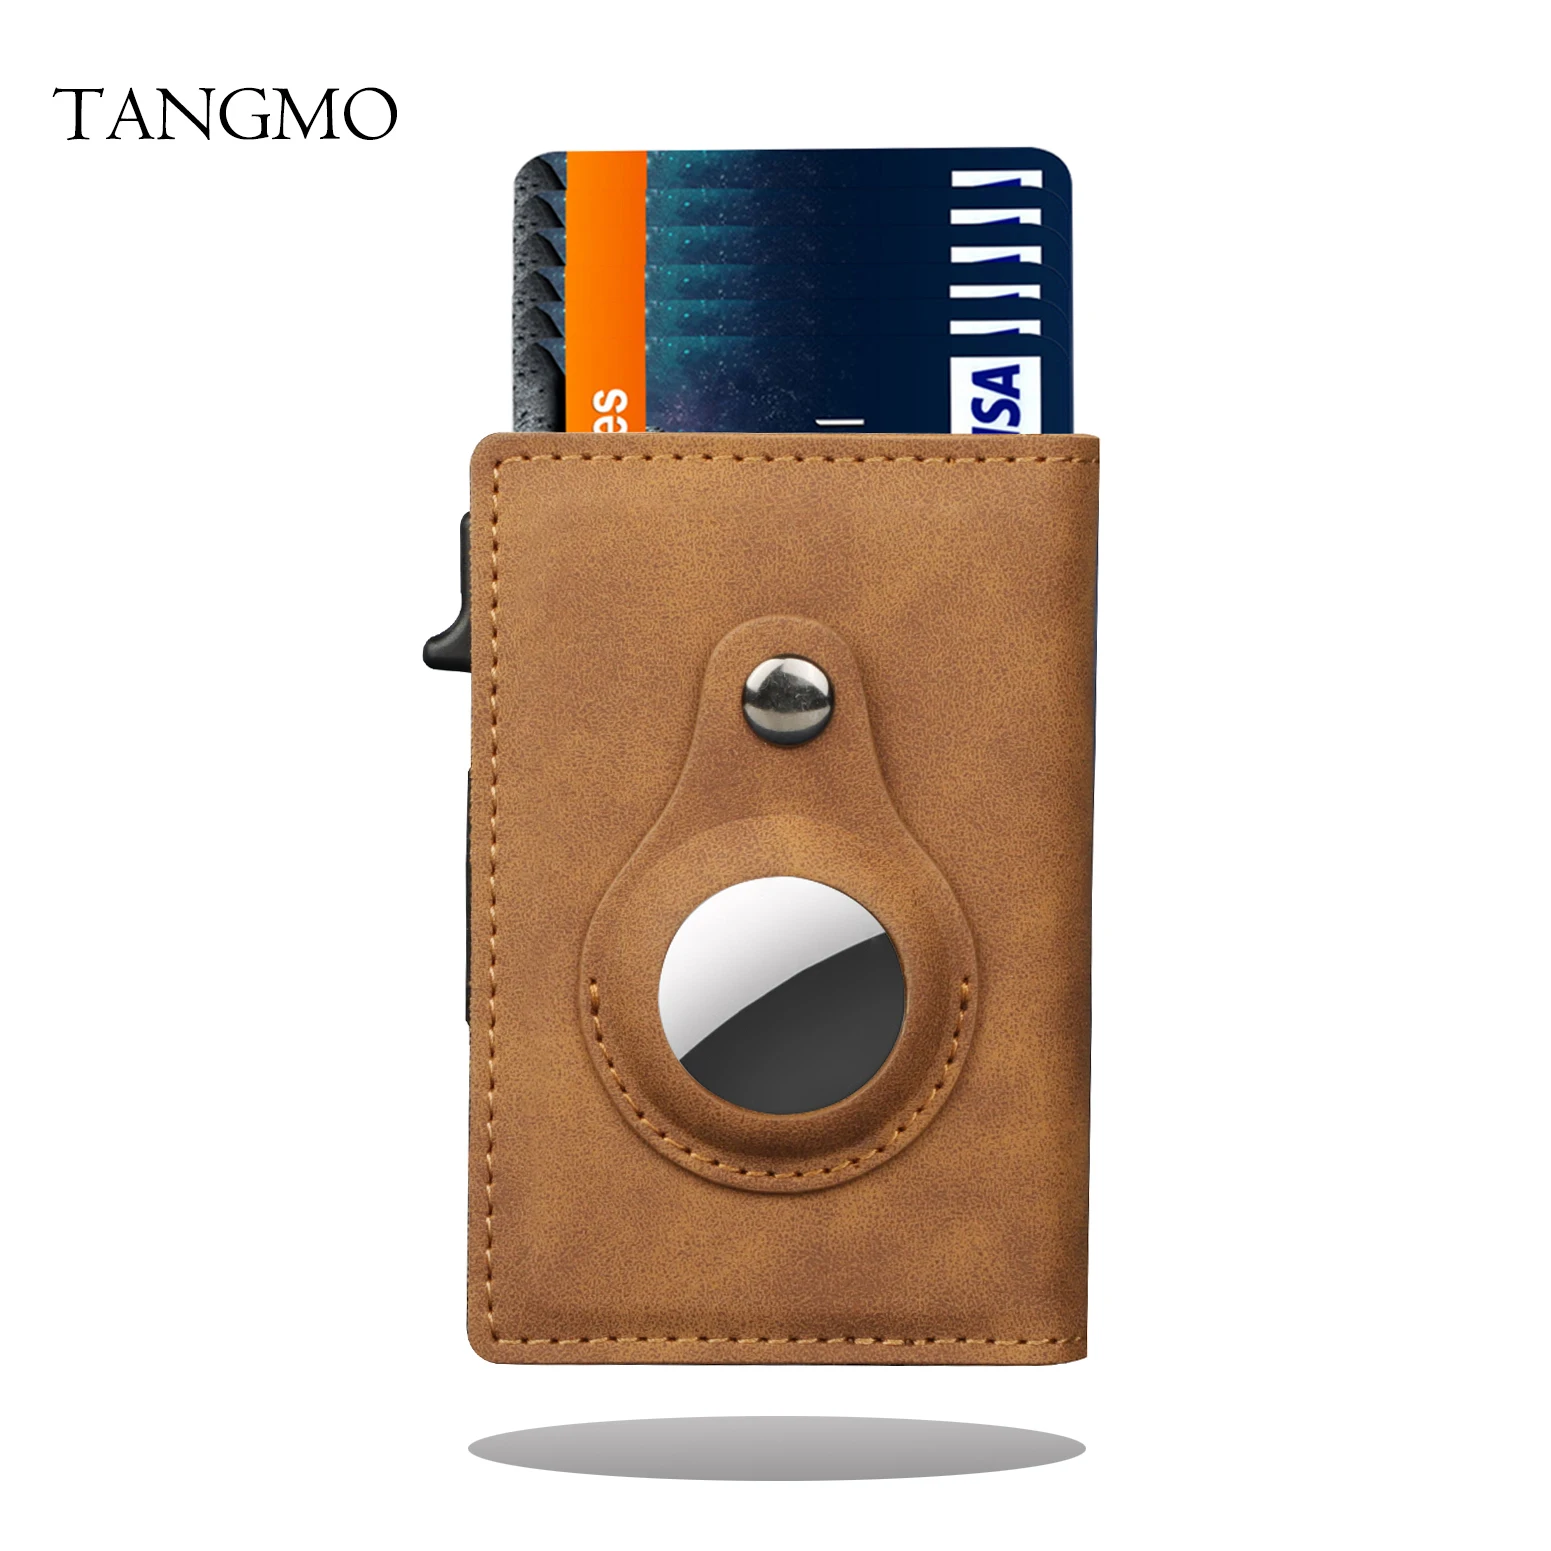 tangmo-portefeuille-intelligent-en-aluminium-porte-monnaie-carte-de-credit-rfid-pop-up-automatique-mini-etui-airtag-housse